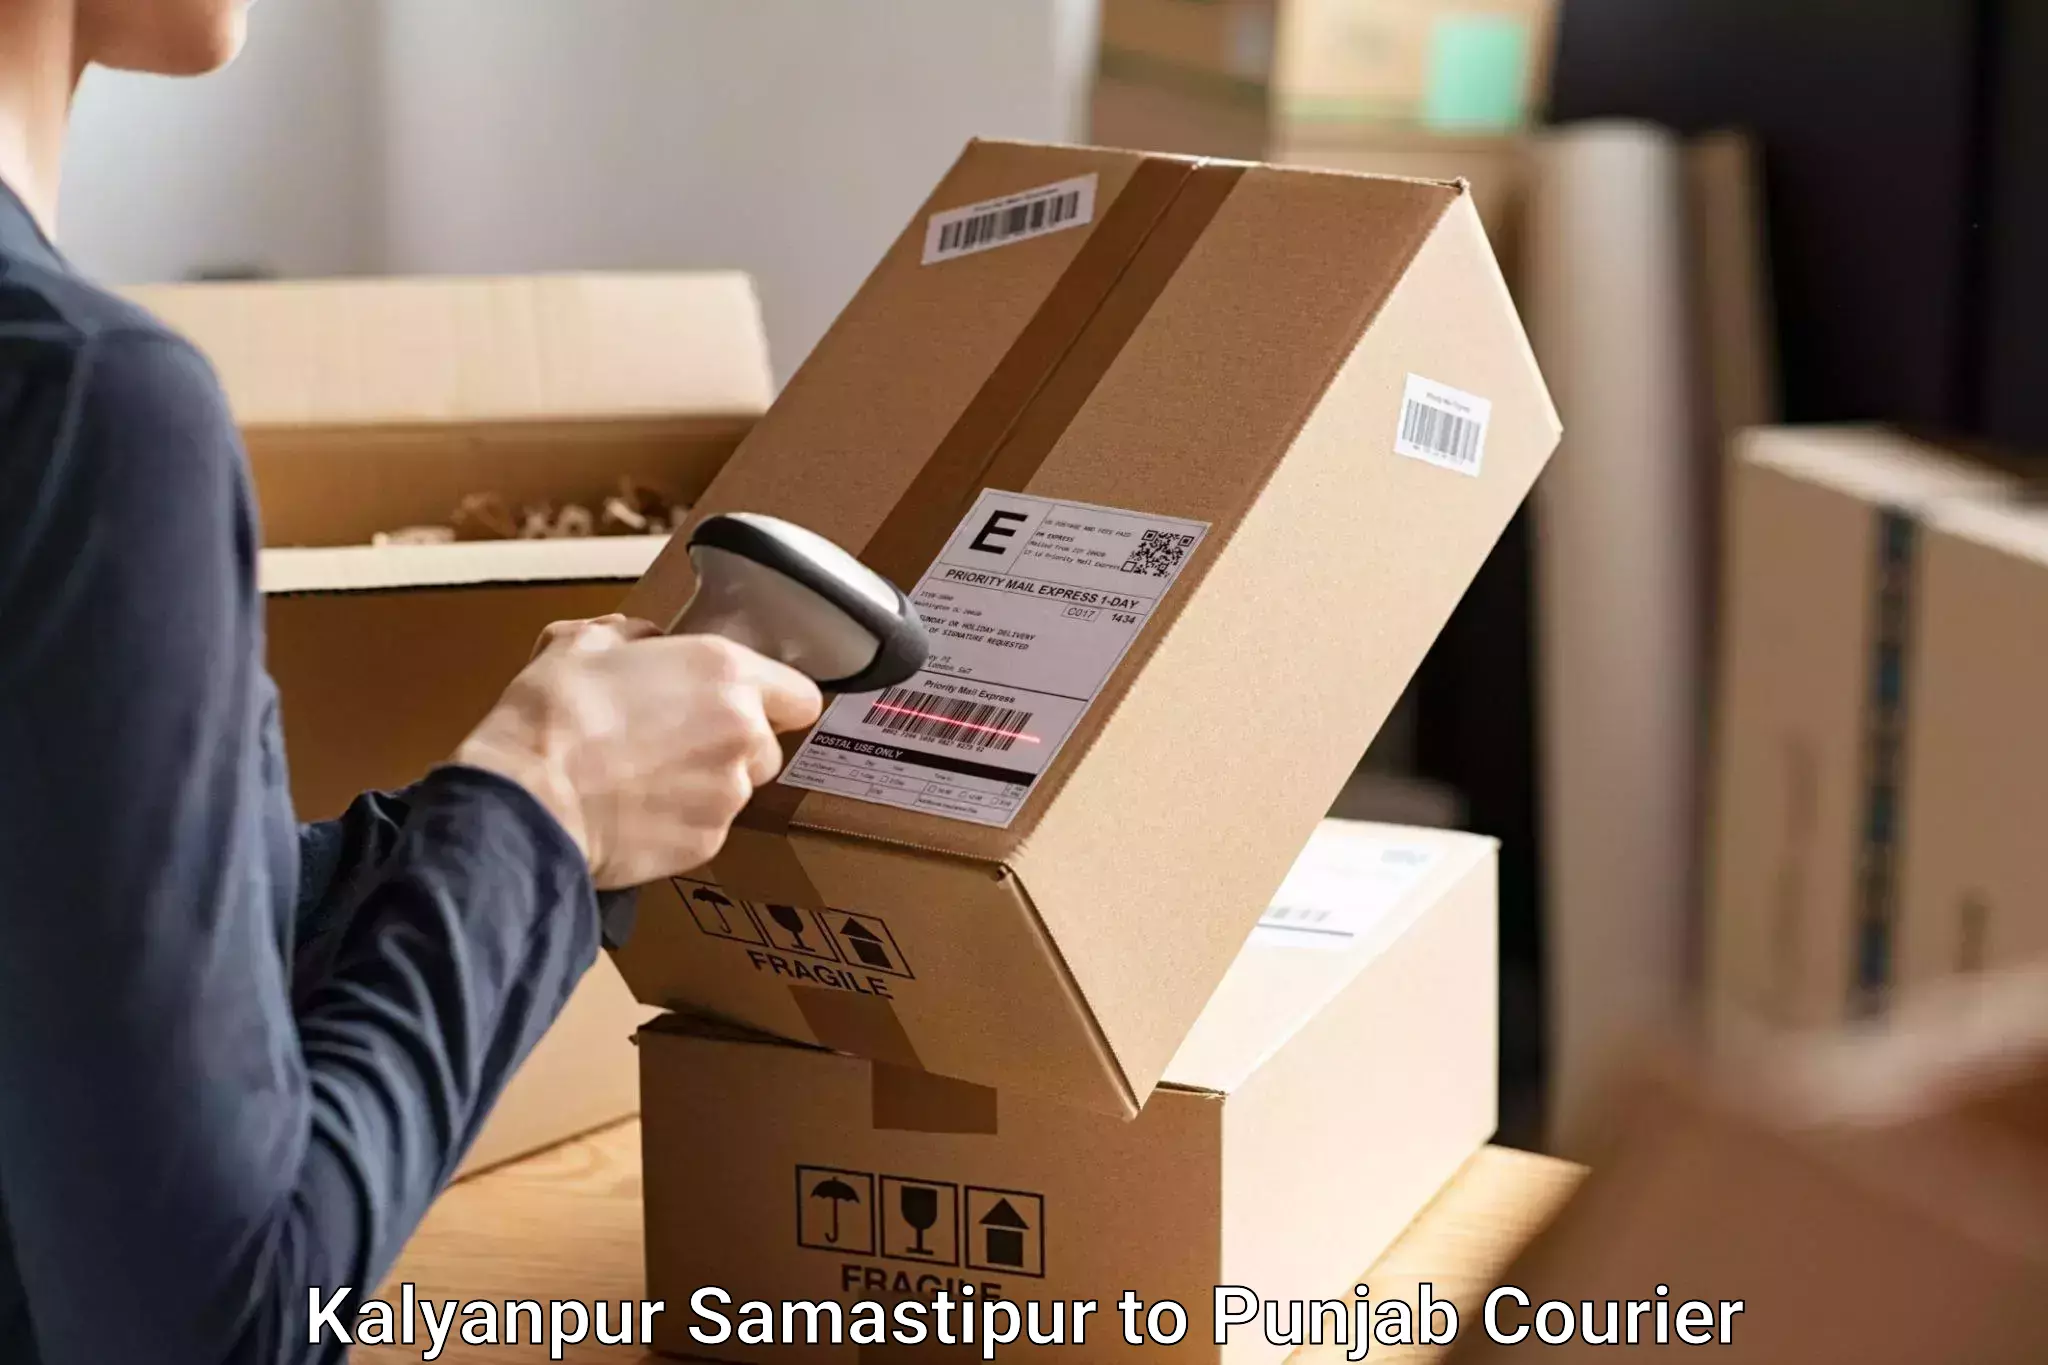 Baggage shipping experts Kalyanpur Samastipur to Zirakpur